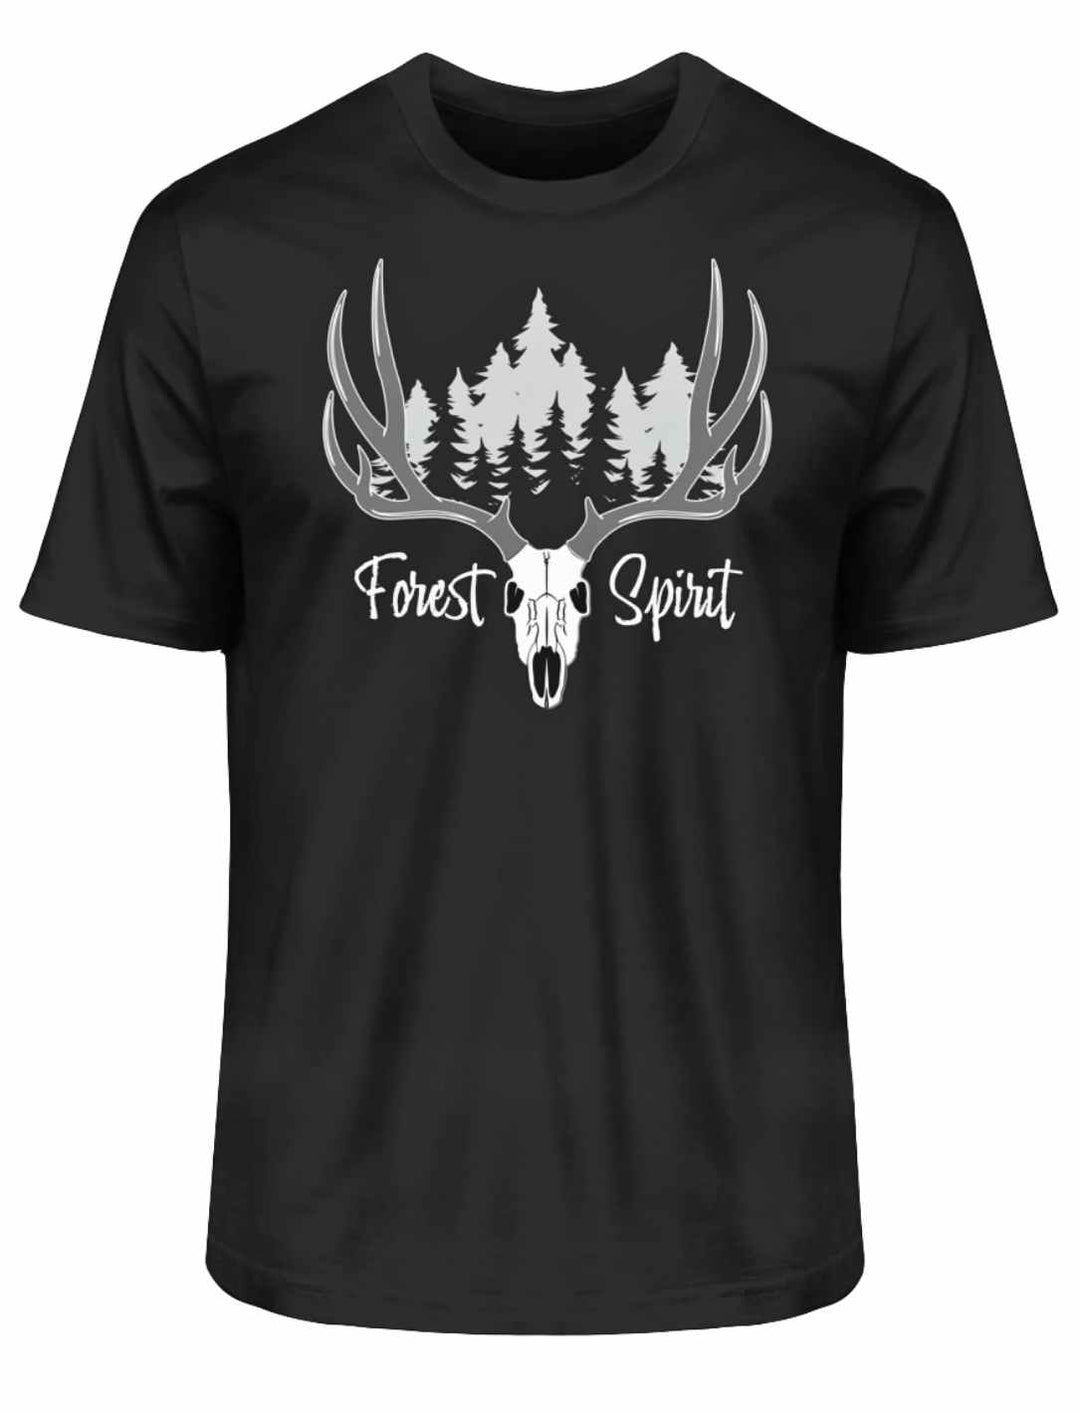 Stylisches Forest Spirit T-Shirt in elegantem Schwarz, perfekt für jeden Anlass, auf weißem Hintergrund.